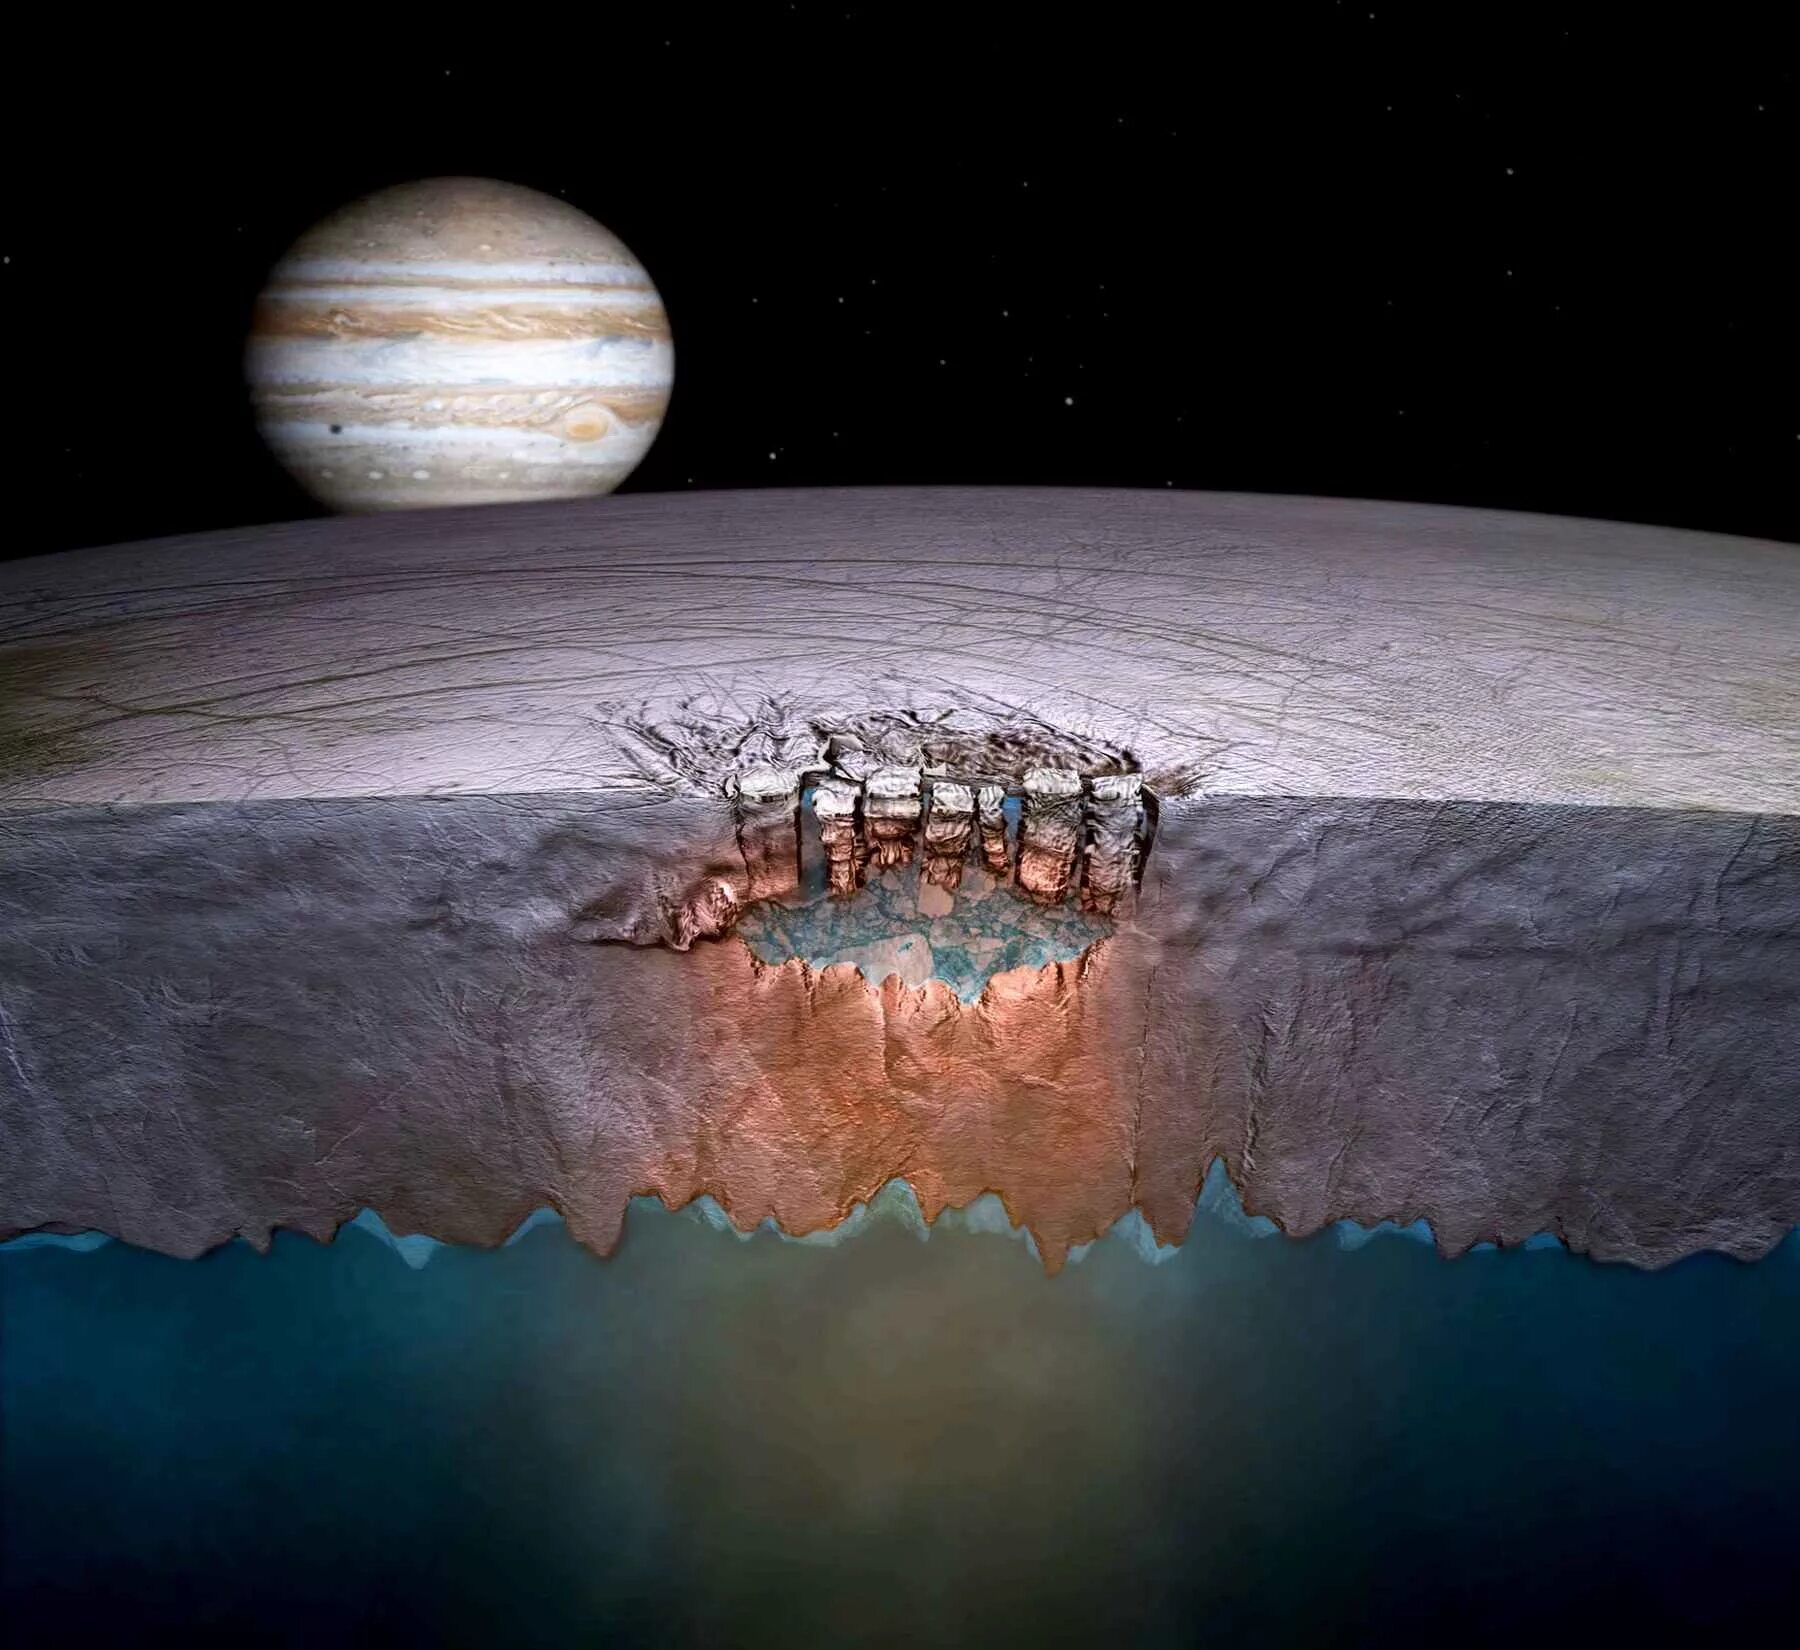 Европа Спутник Юпитера океан. Поверхность Европы спутника Юпитера. Европа ледяной Спутник Юпитера. Жизнь на Европе спутнике Юпитера.